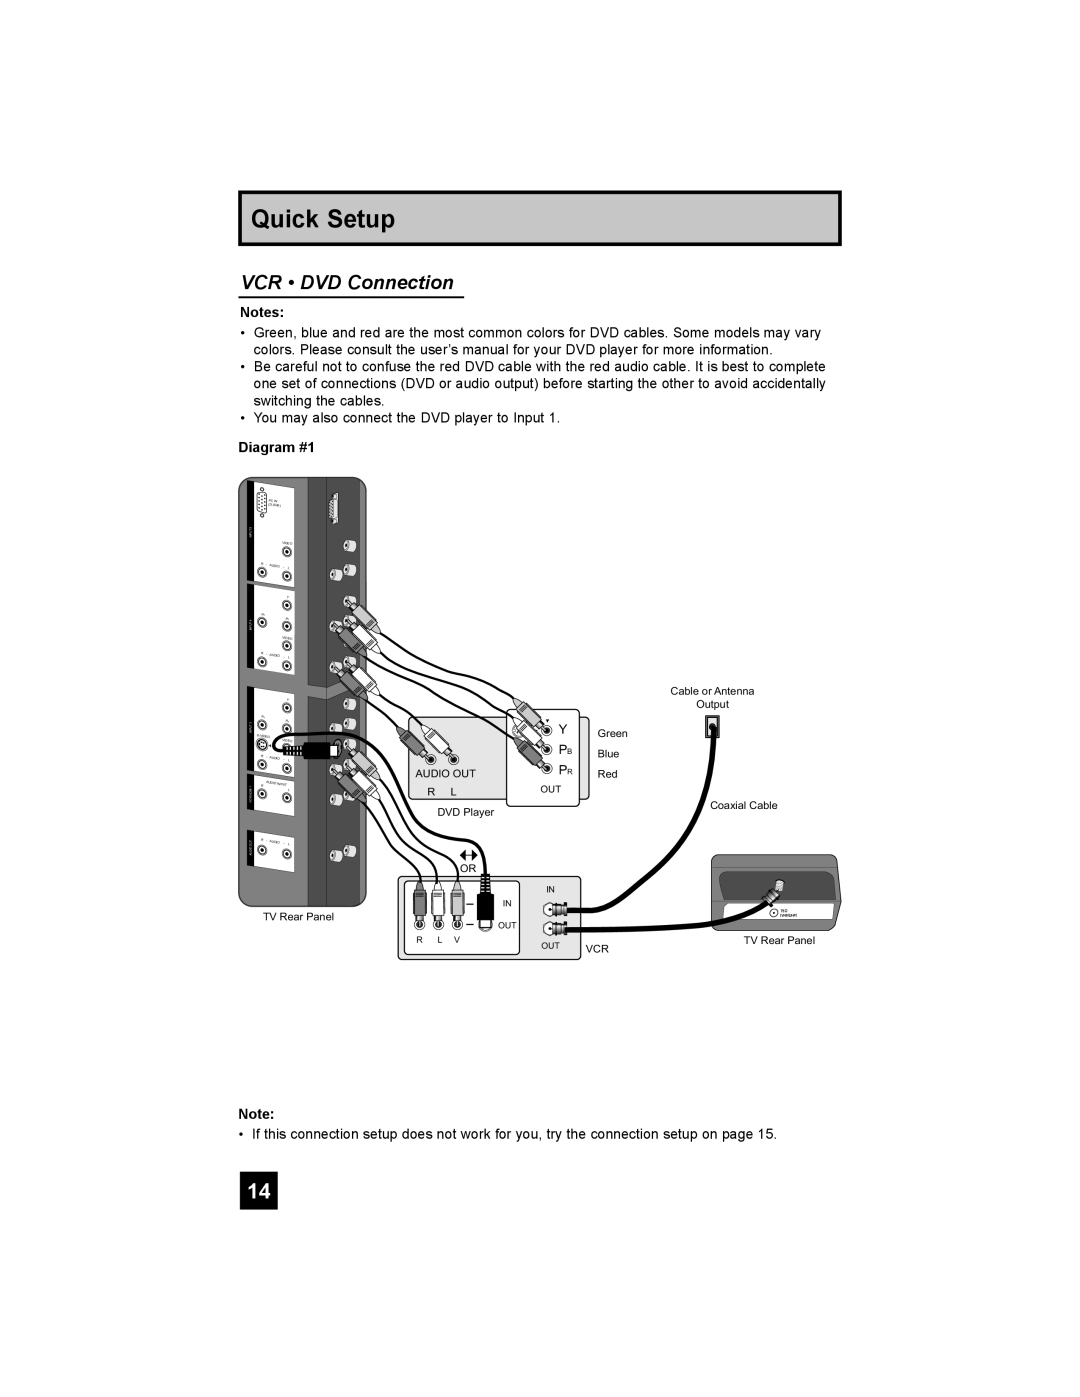 JVC LT-42X898, LT-37X898 manual VCR DVD Connection, Diagram #1, Quick Setup 